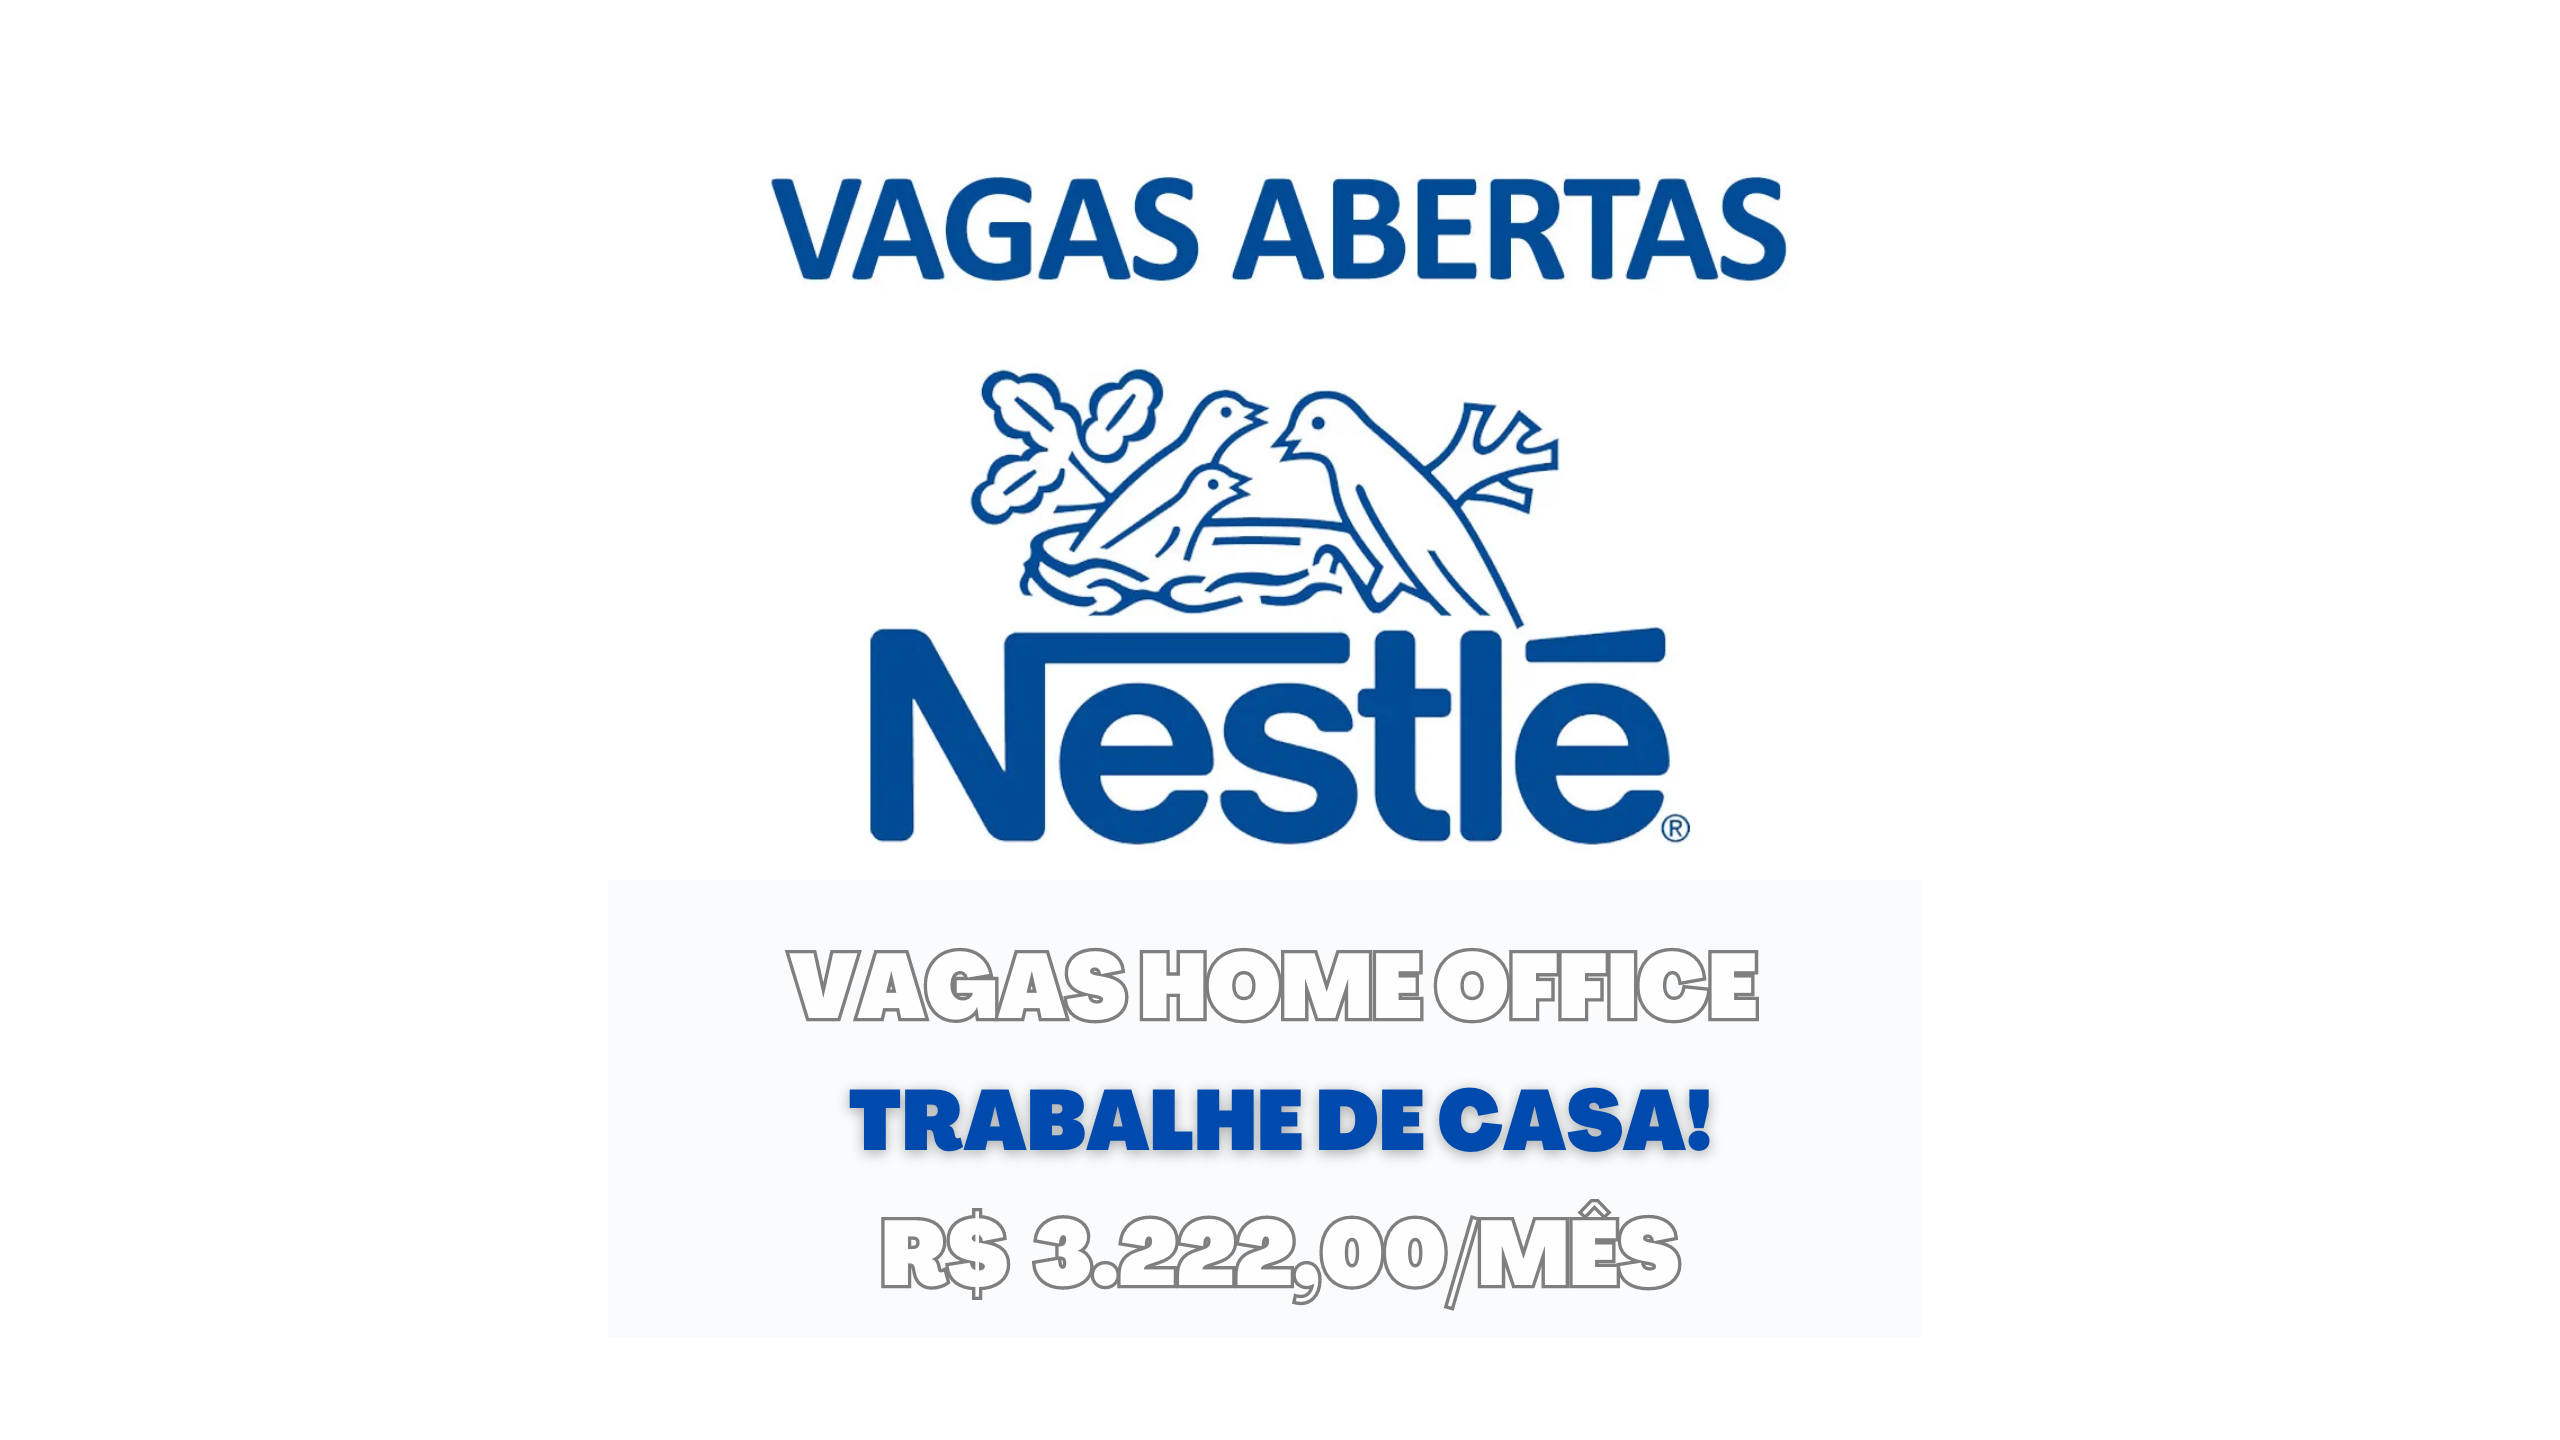 Nestlé anuncia vagas HOME OFFICE no Brasil com salário de até R$ 3.222,00